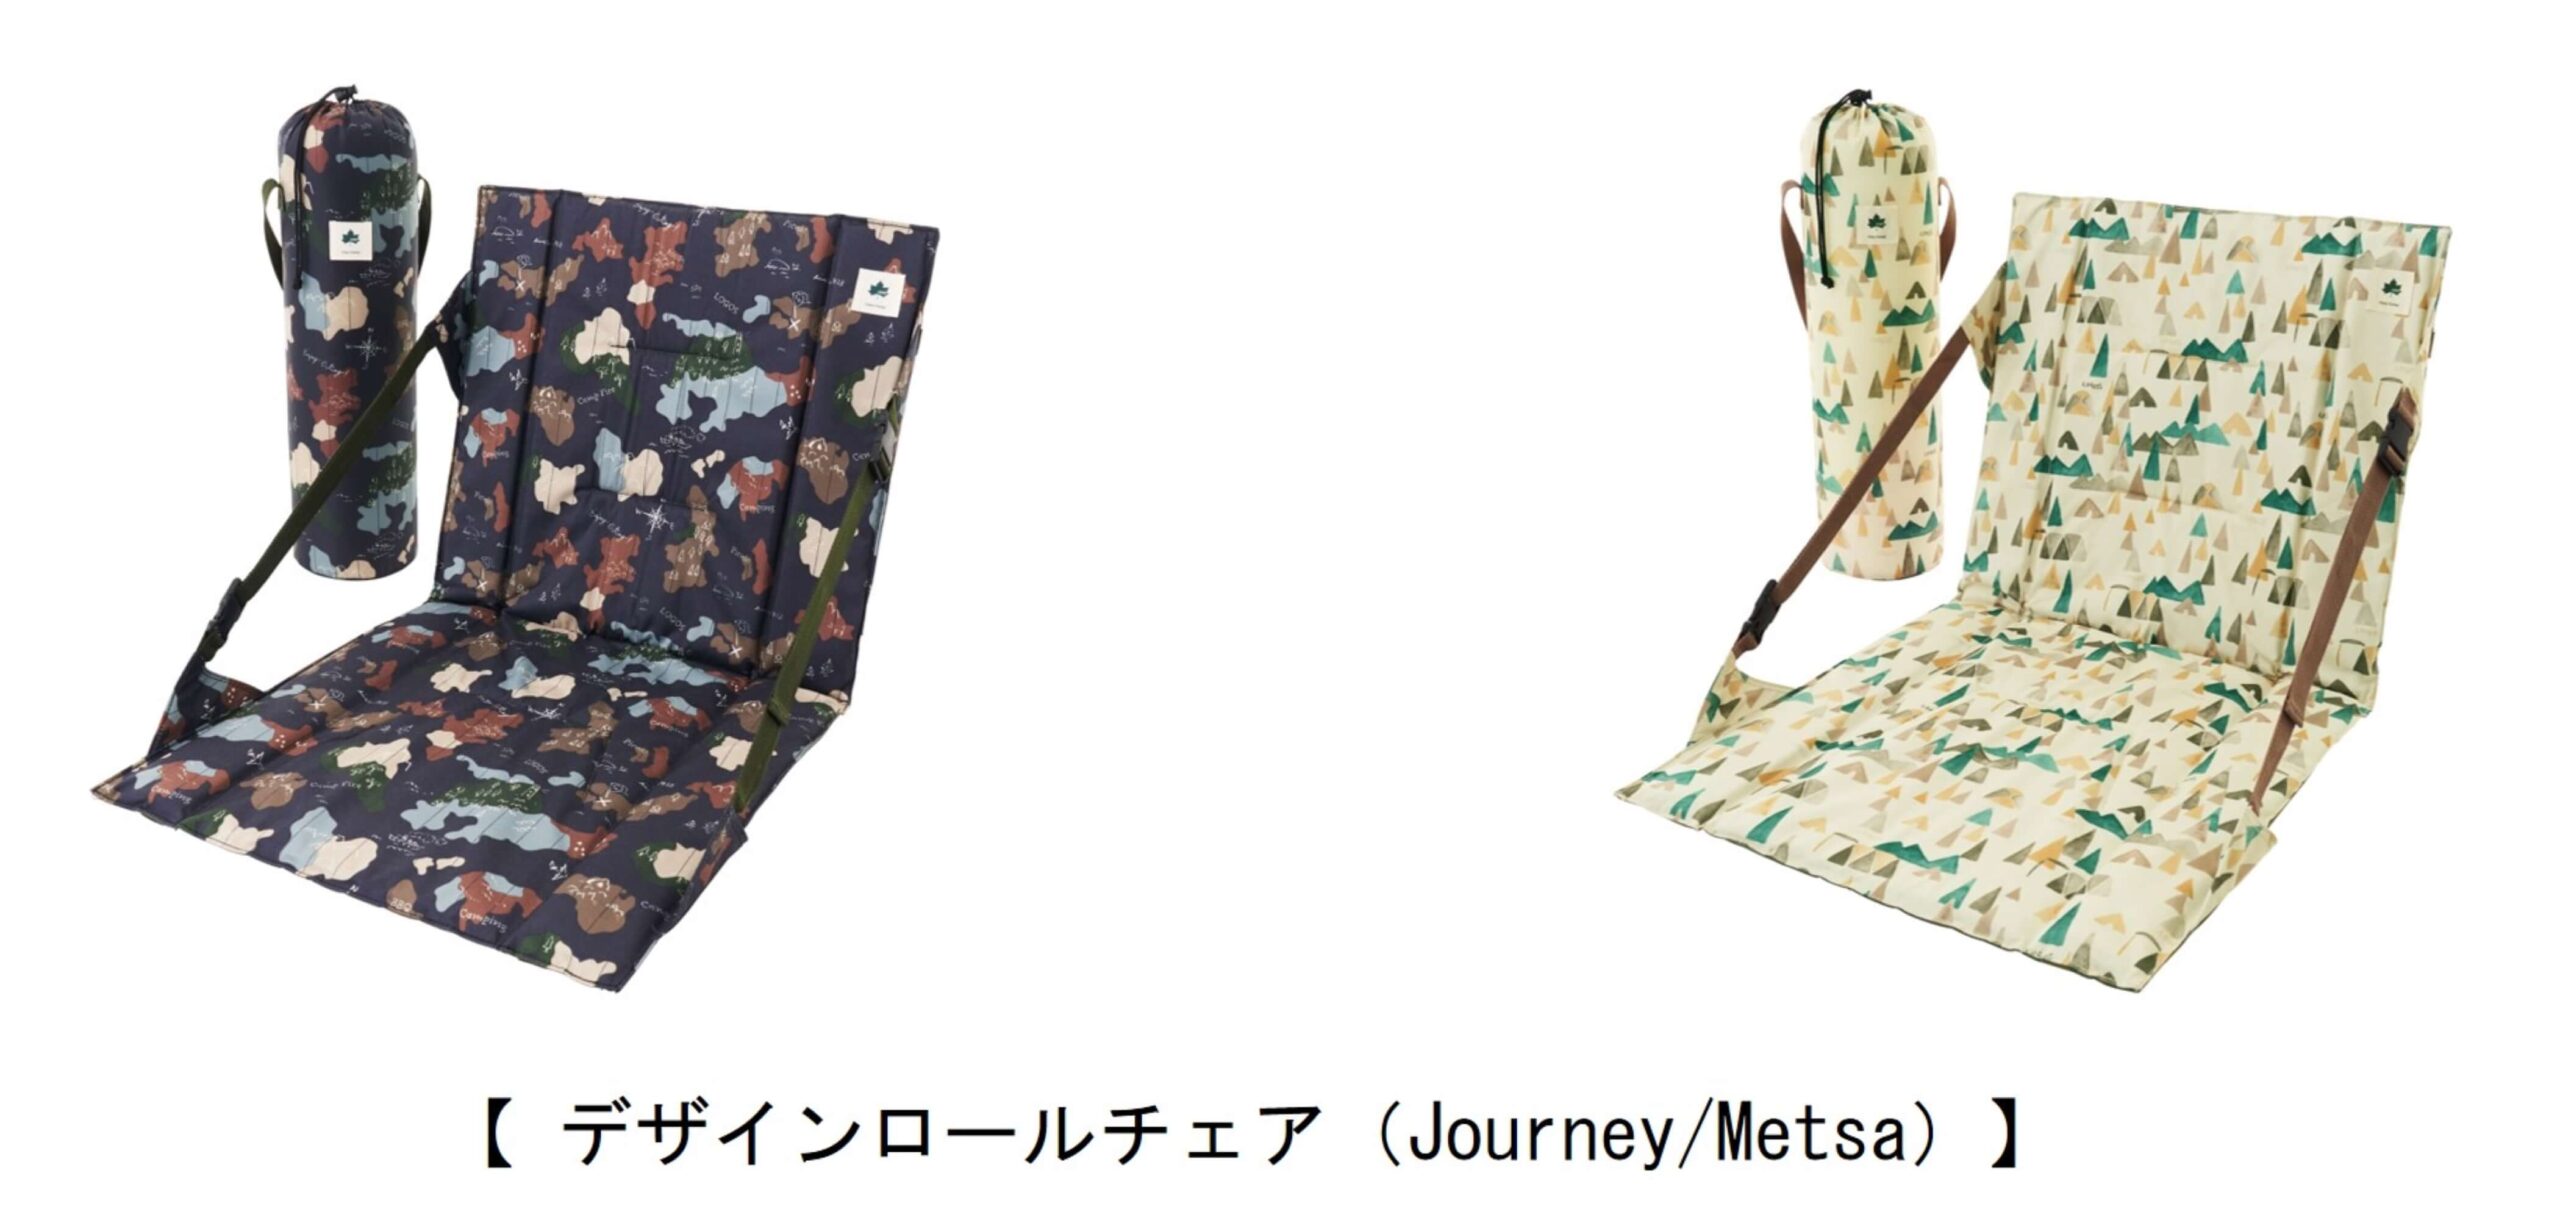 Journey&Metsa